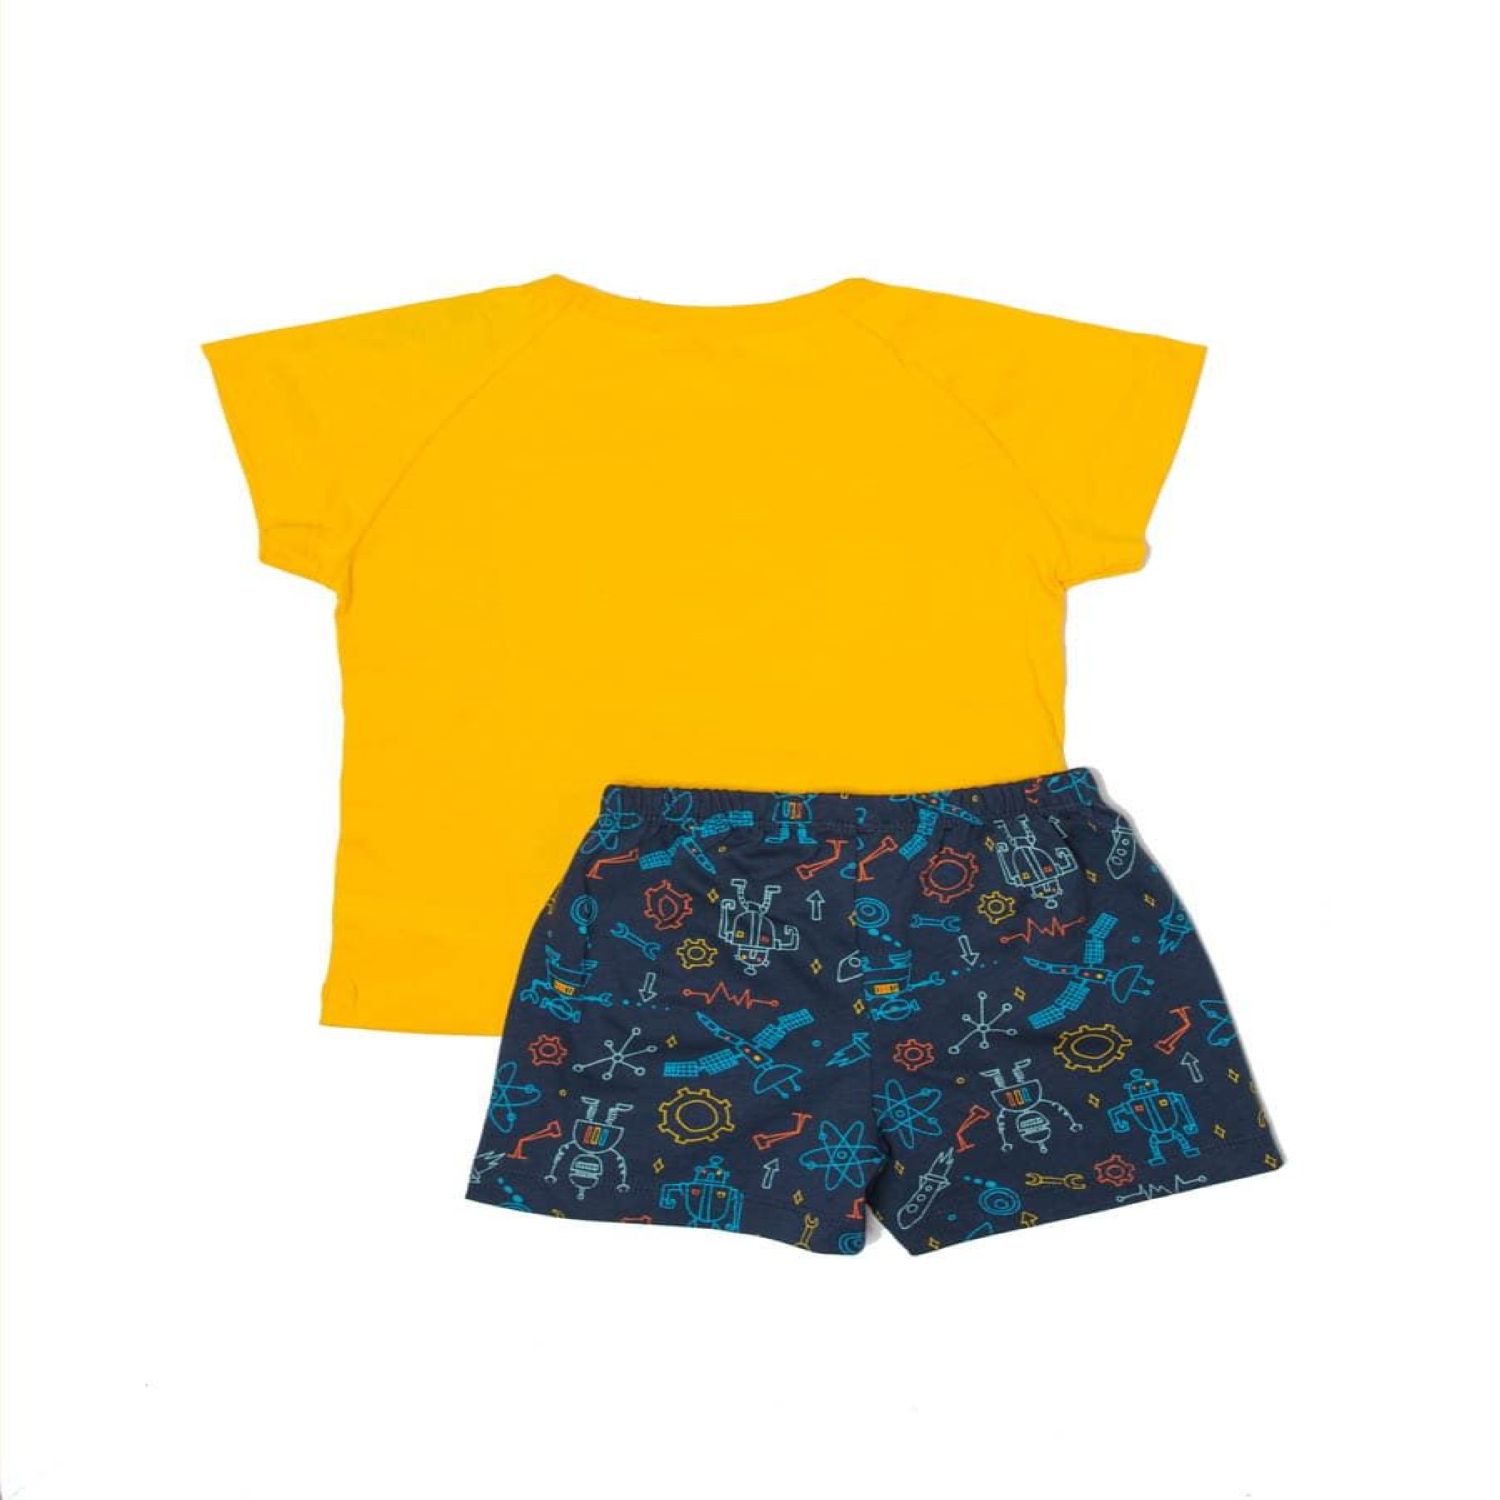 Пижама Mark Formelle 563306/19-5029-0/желтый+цветныероботы - фото 2